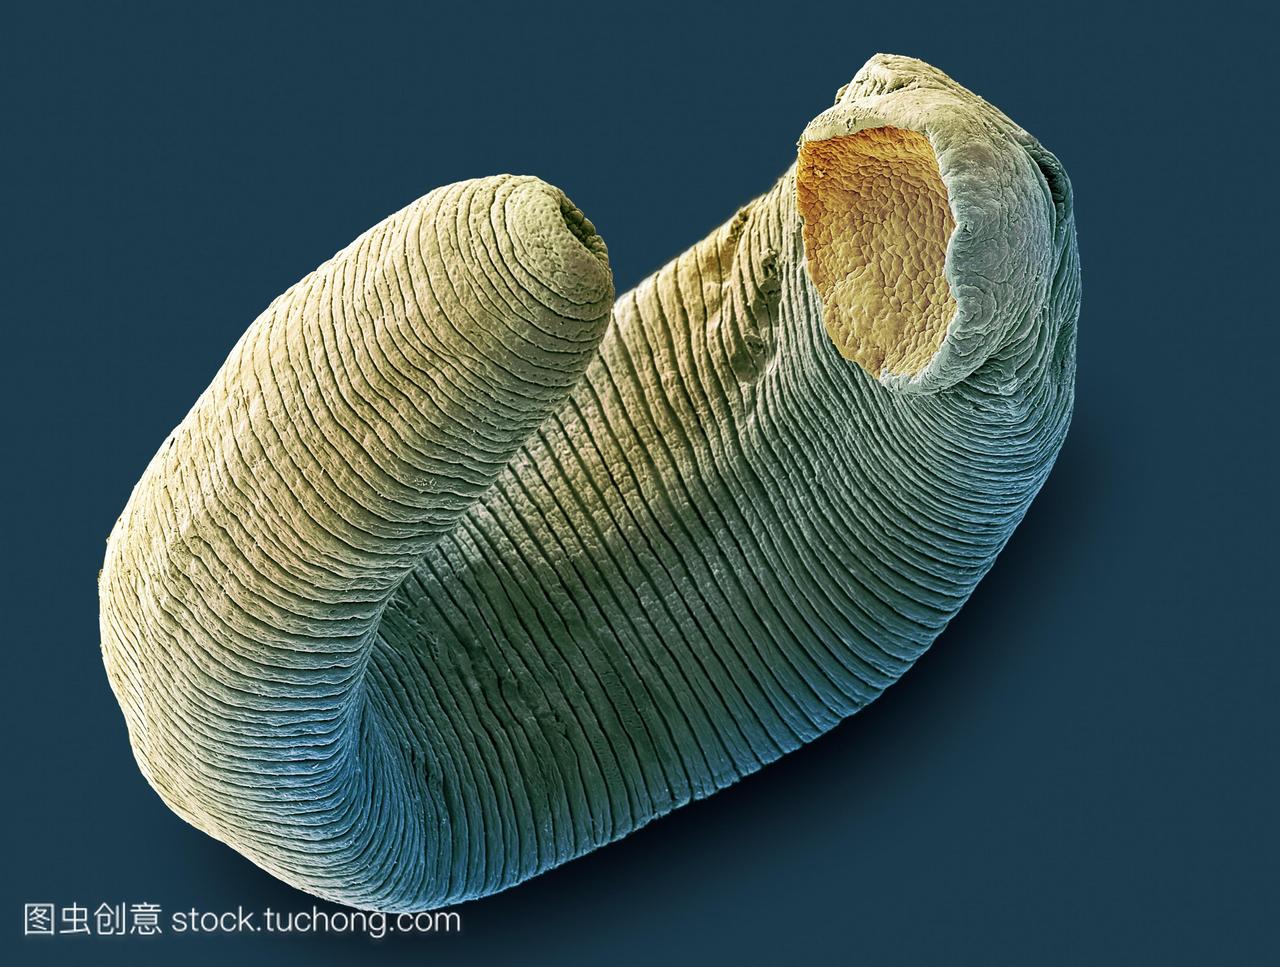 子显微摄影sem淡水水蛭水蛭sp这种寄生虫有两